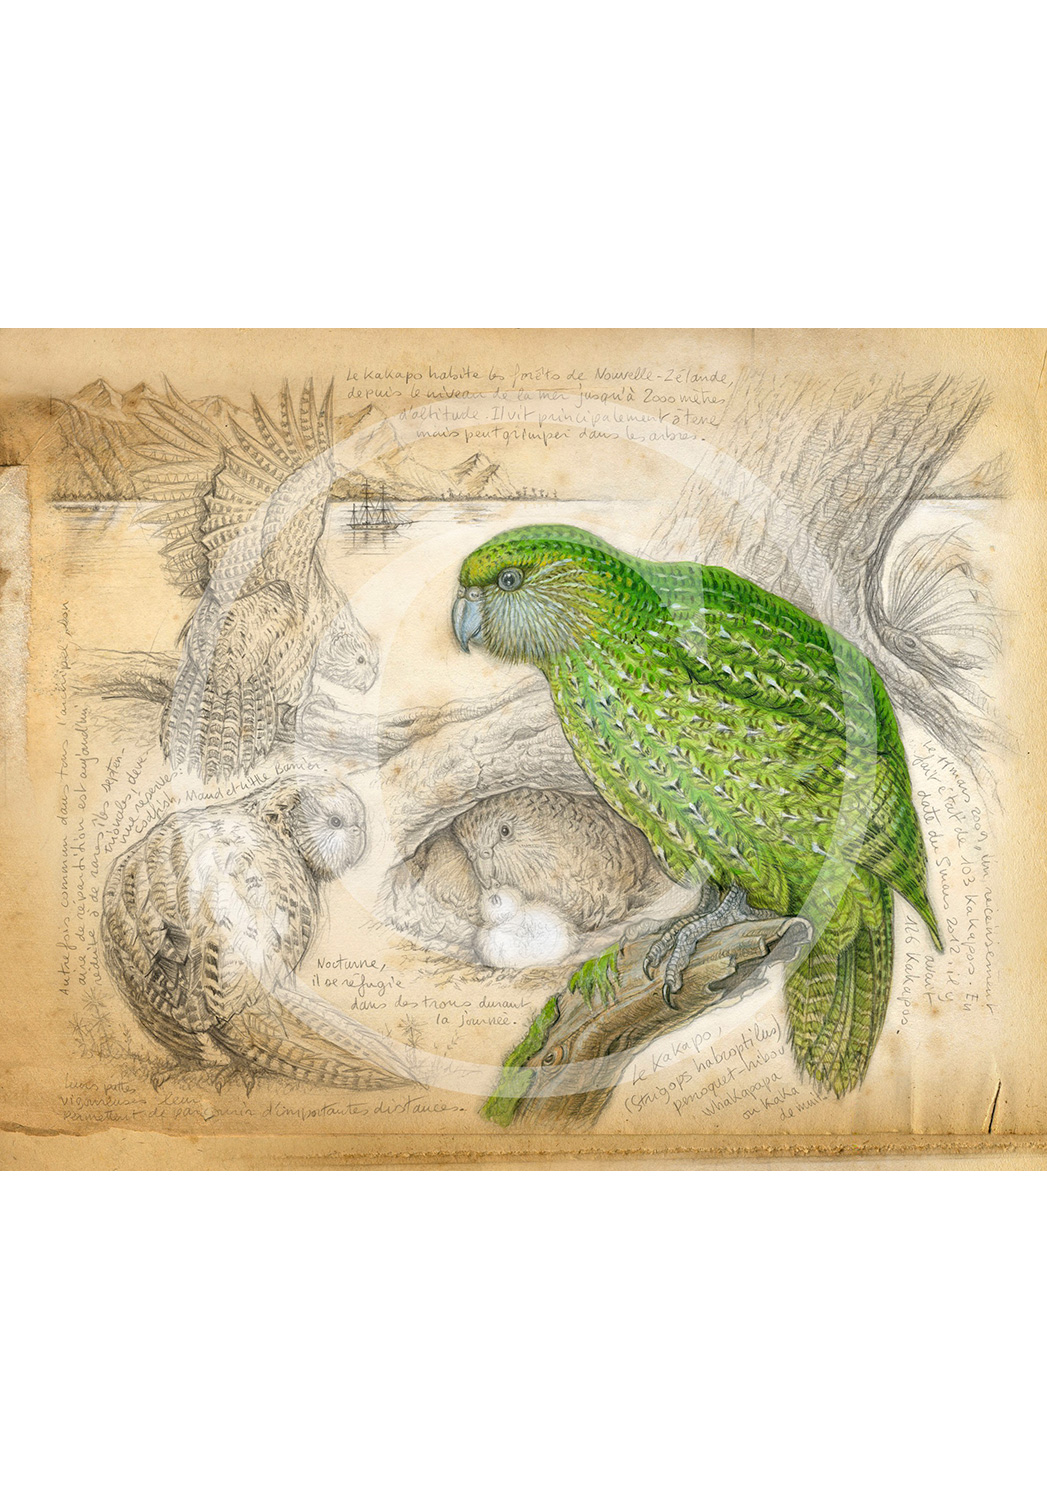 Marcello-art: Ornithology 192 - Strigops kakapo